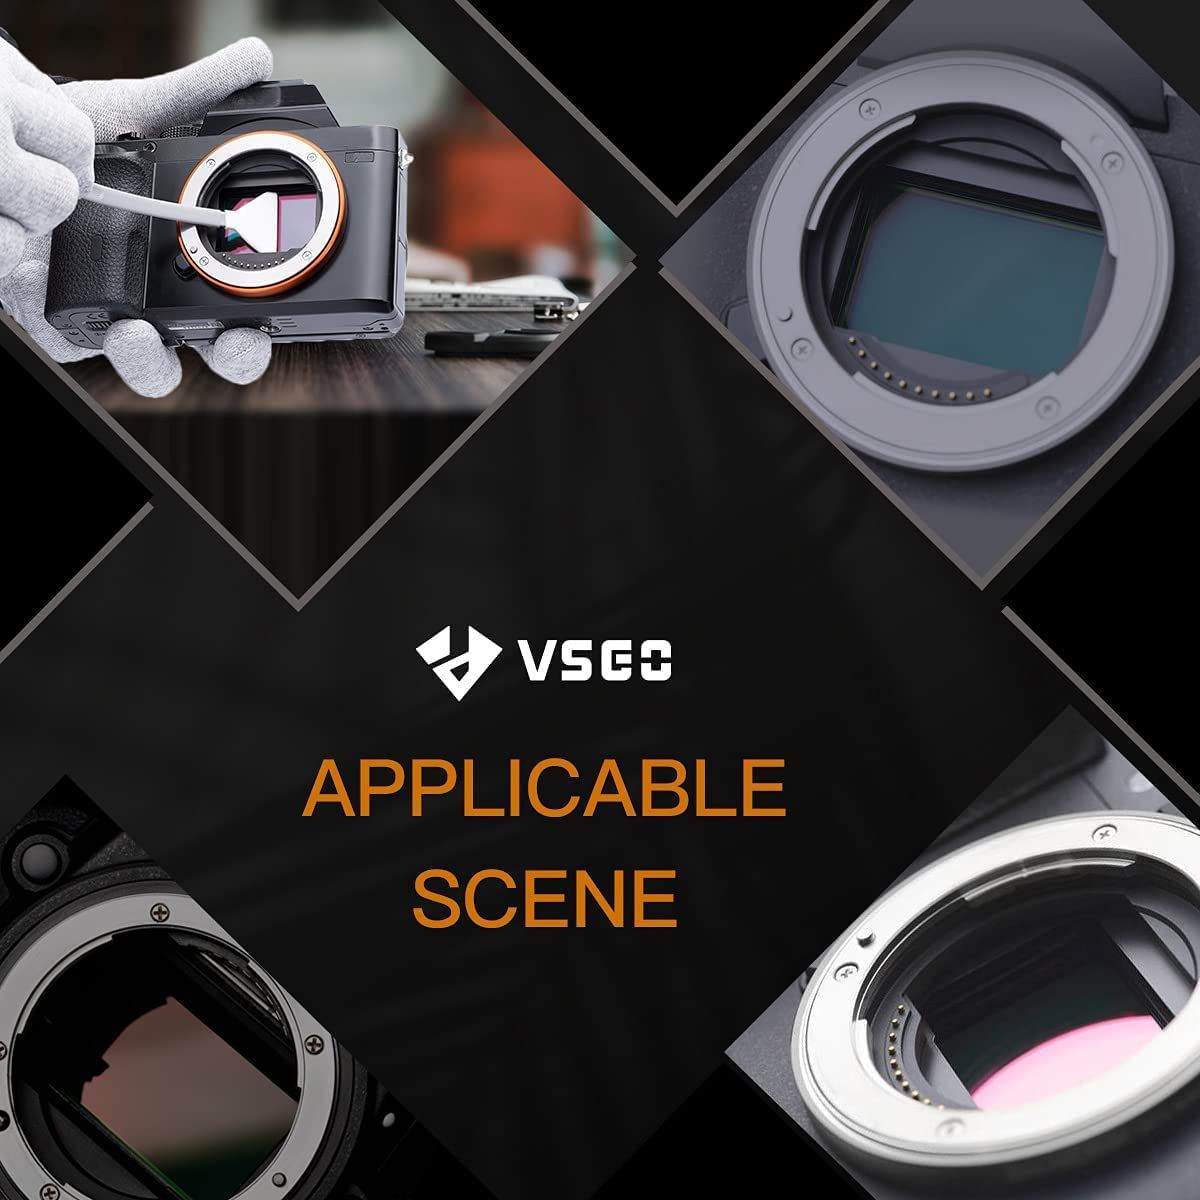 VSGO 24 Pack of Sensor Cleaning Swabs V-S03-E